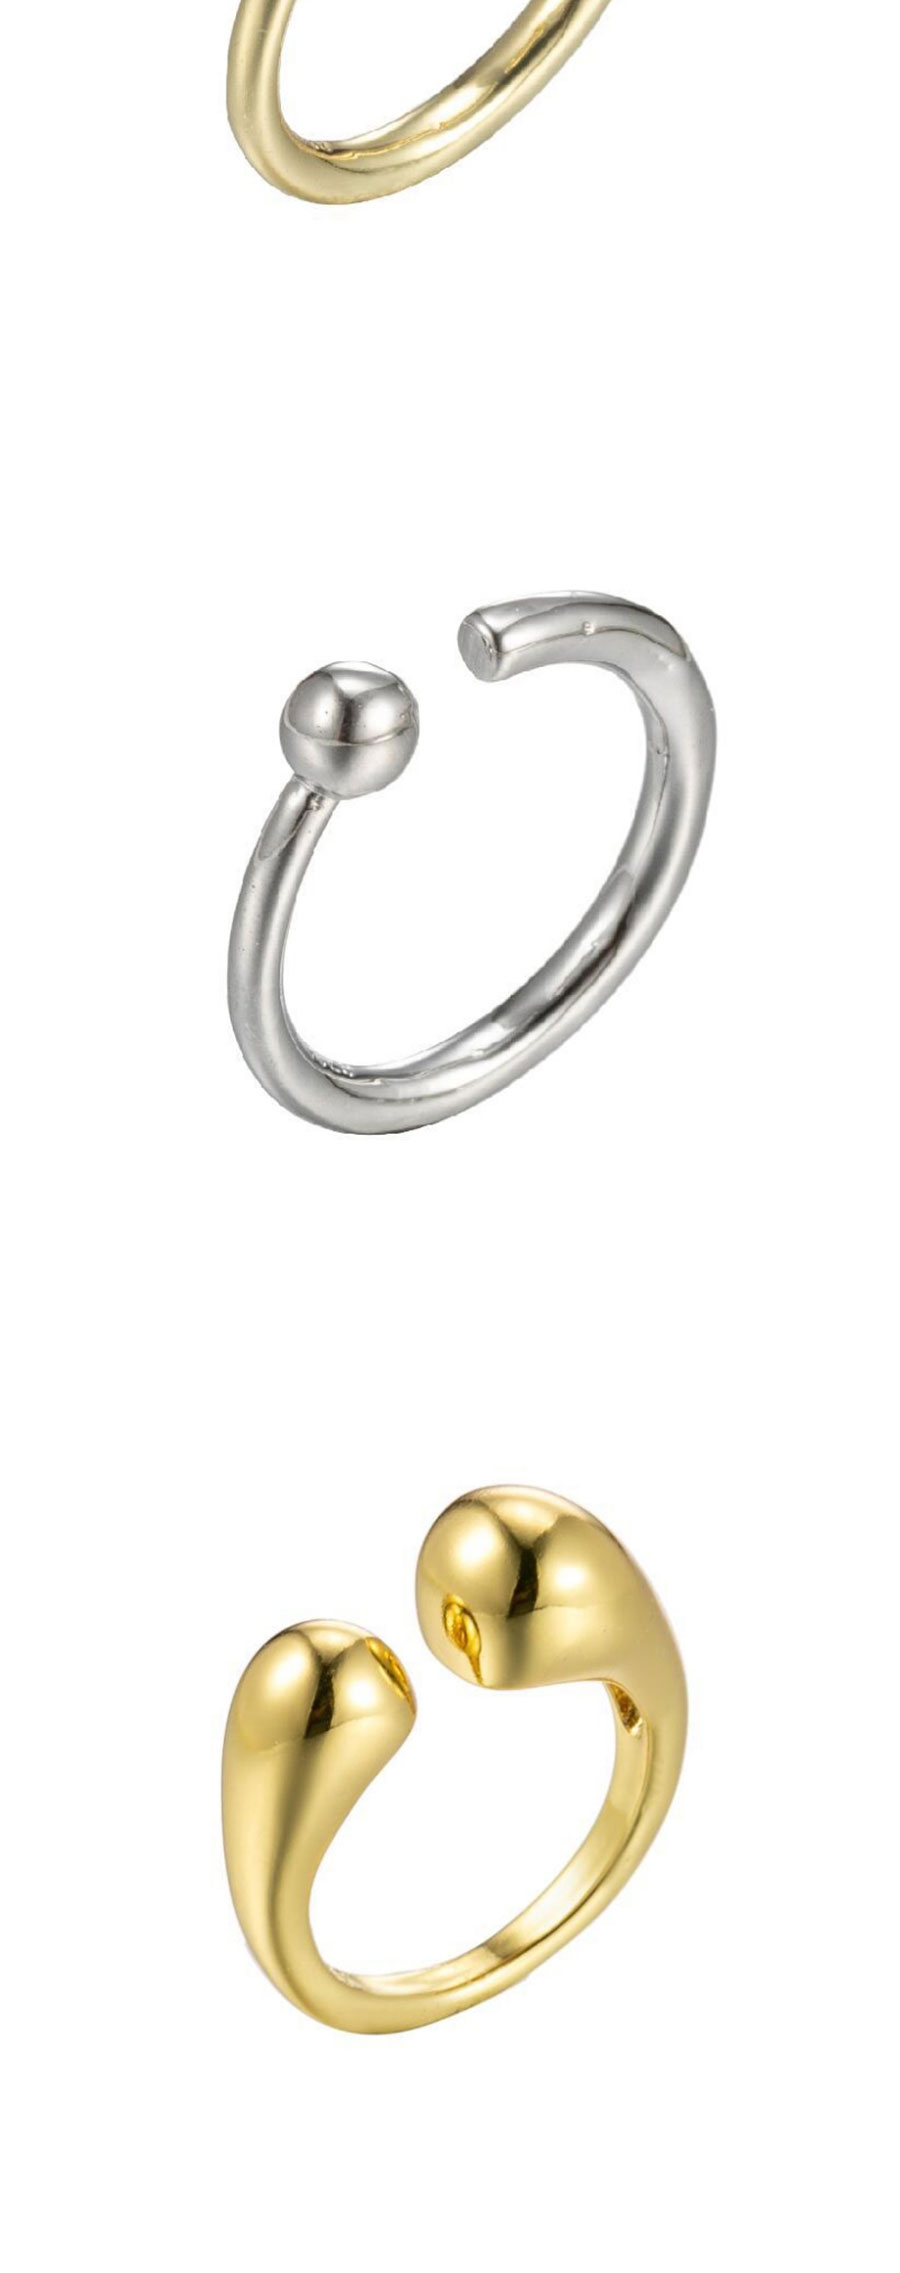 Fashion Silver-7 Stainless Steel Irregular Drop Opening Ring,Rings